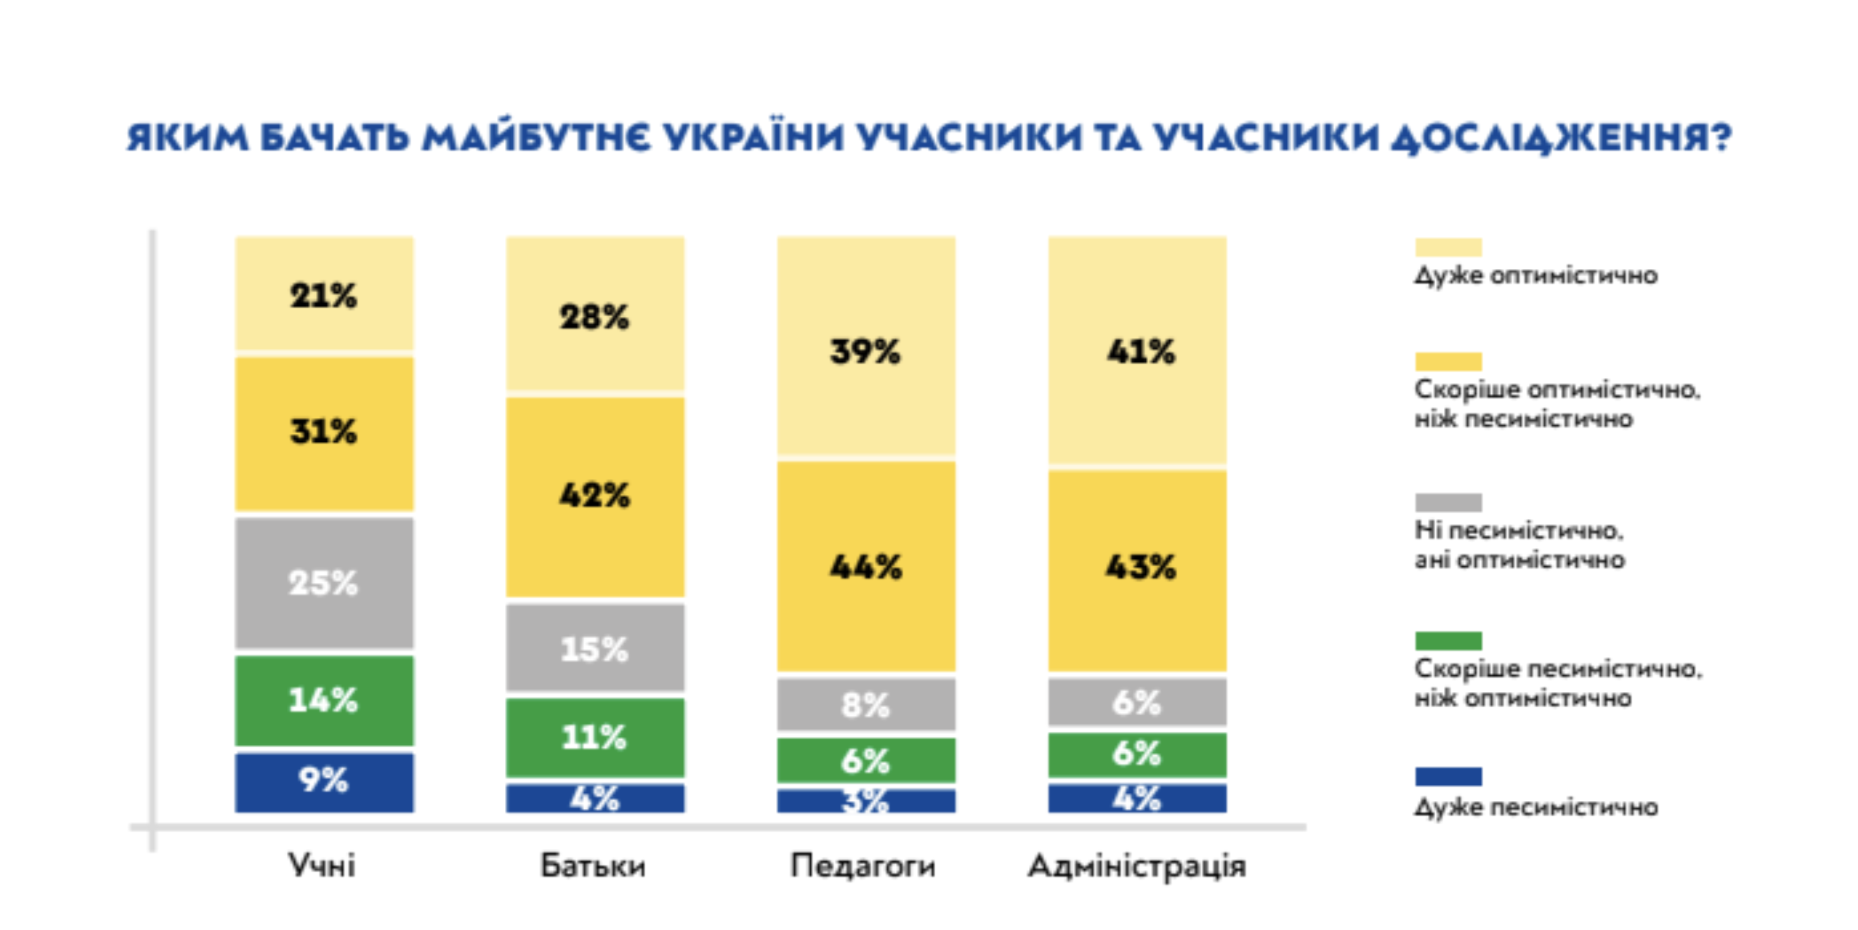 Более четверти украинских школьников заявили о желании уехать из Украины – опрос